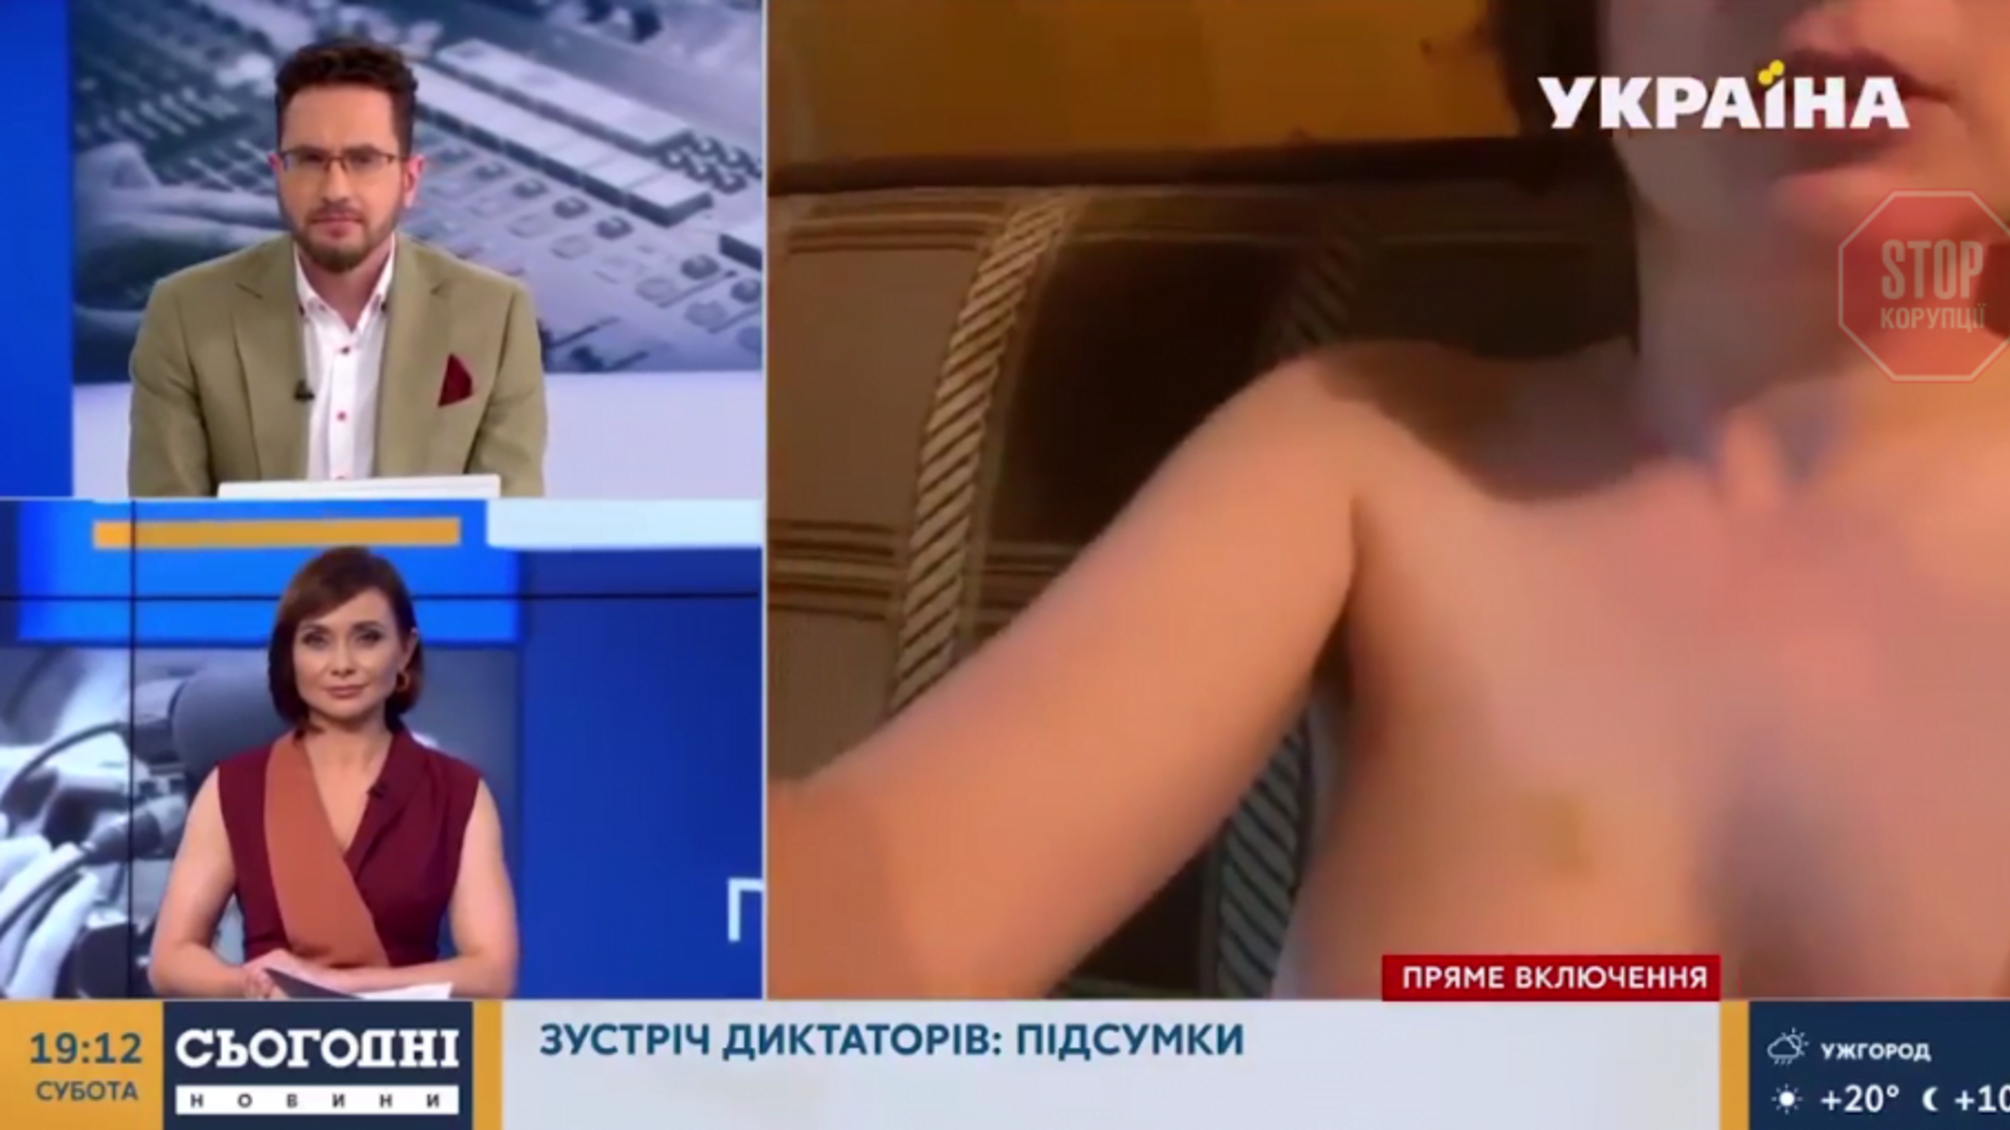 При включении в прямом эфире украинского телеканала случайно в кадр попала обнаженная женщина